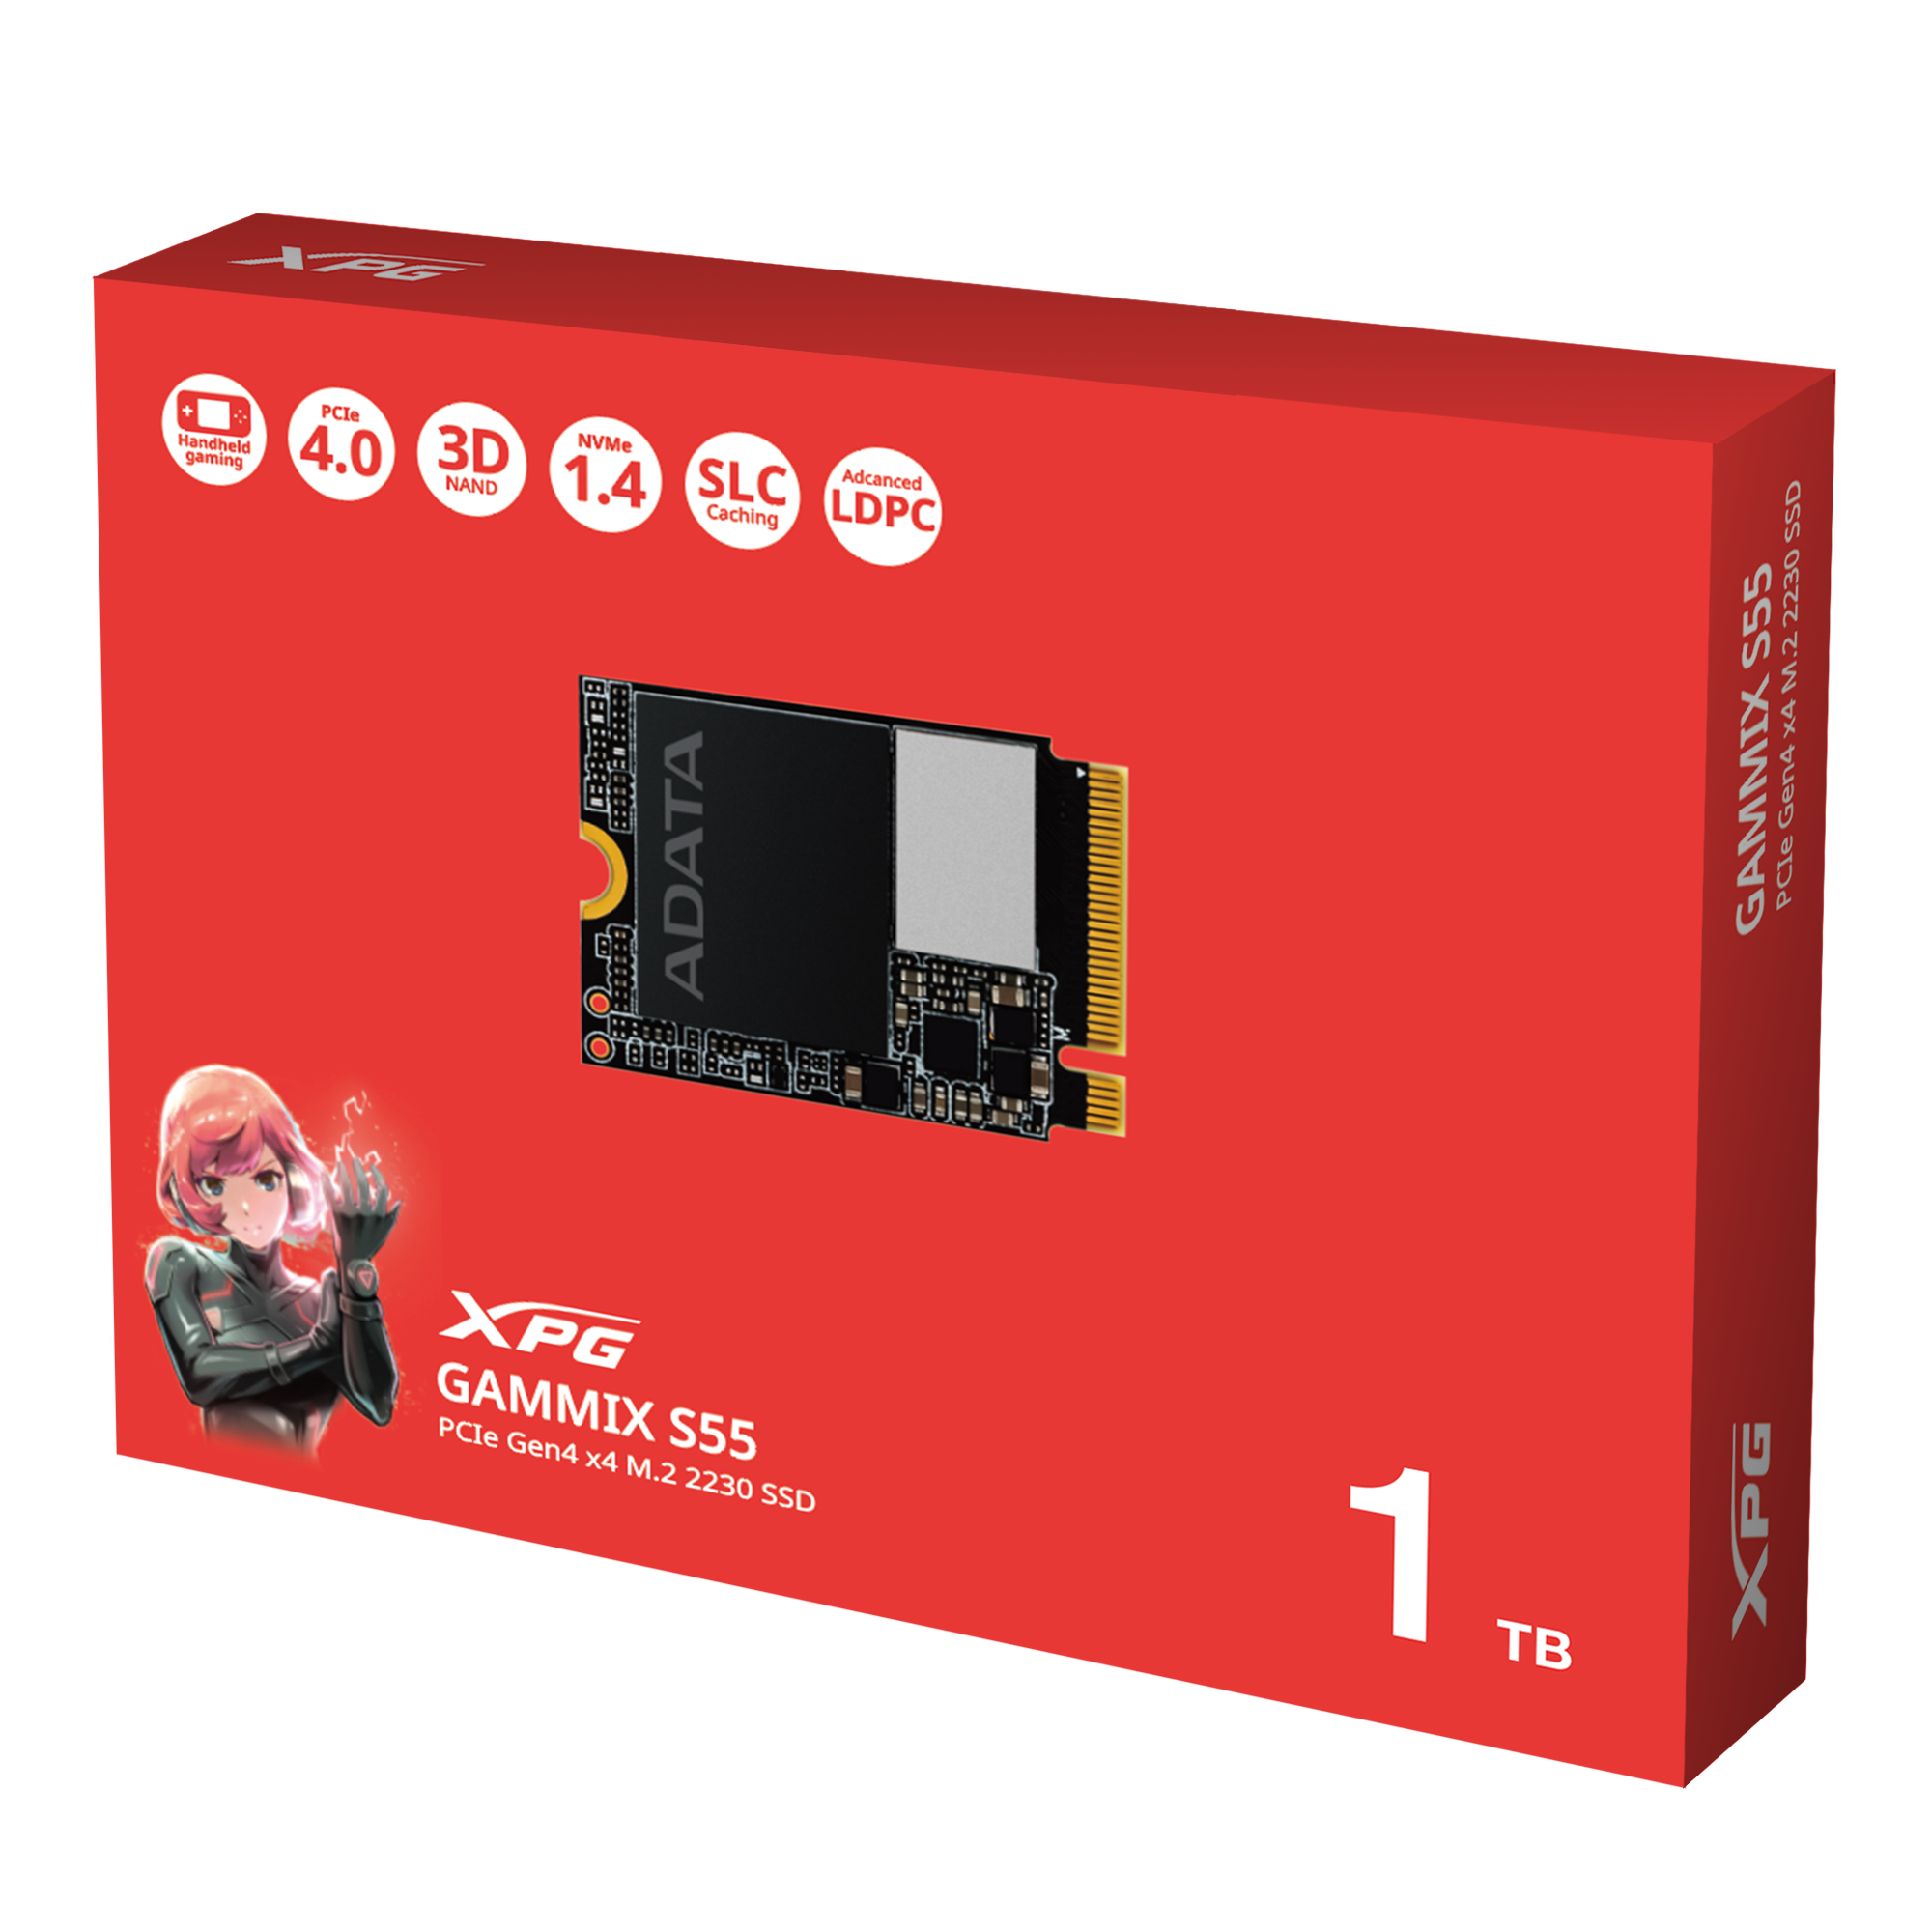 ADATA GAMMIX S55 | PCIe Gen4 x4 M.2 SSD